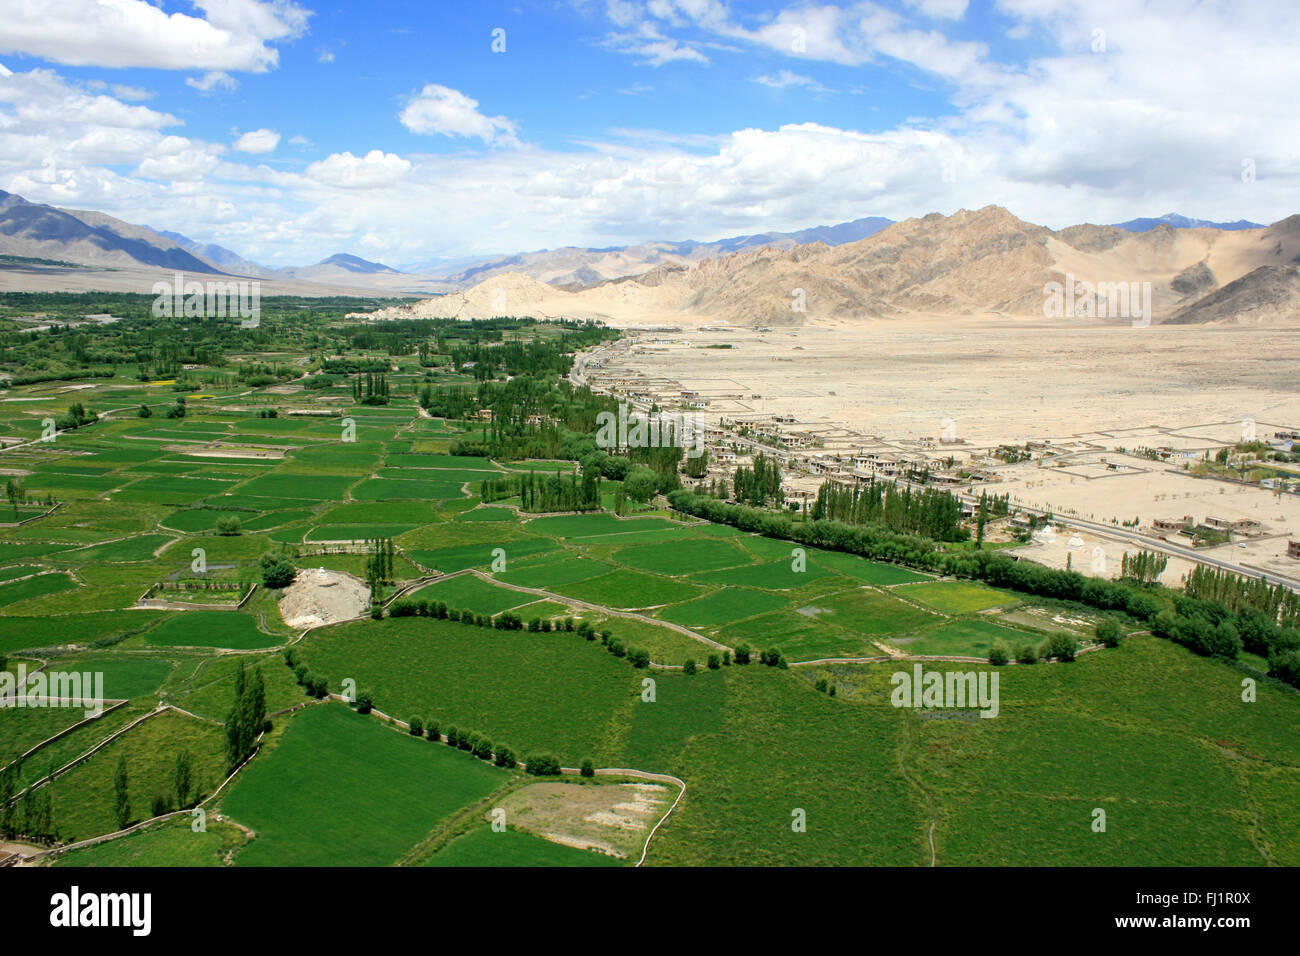 Paisaje de Ladakh, India - con unas vistas increíbles sobre el verde valle del Indo desde el monasterio de Thiksey Foto de stock